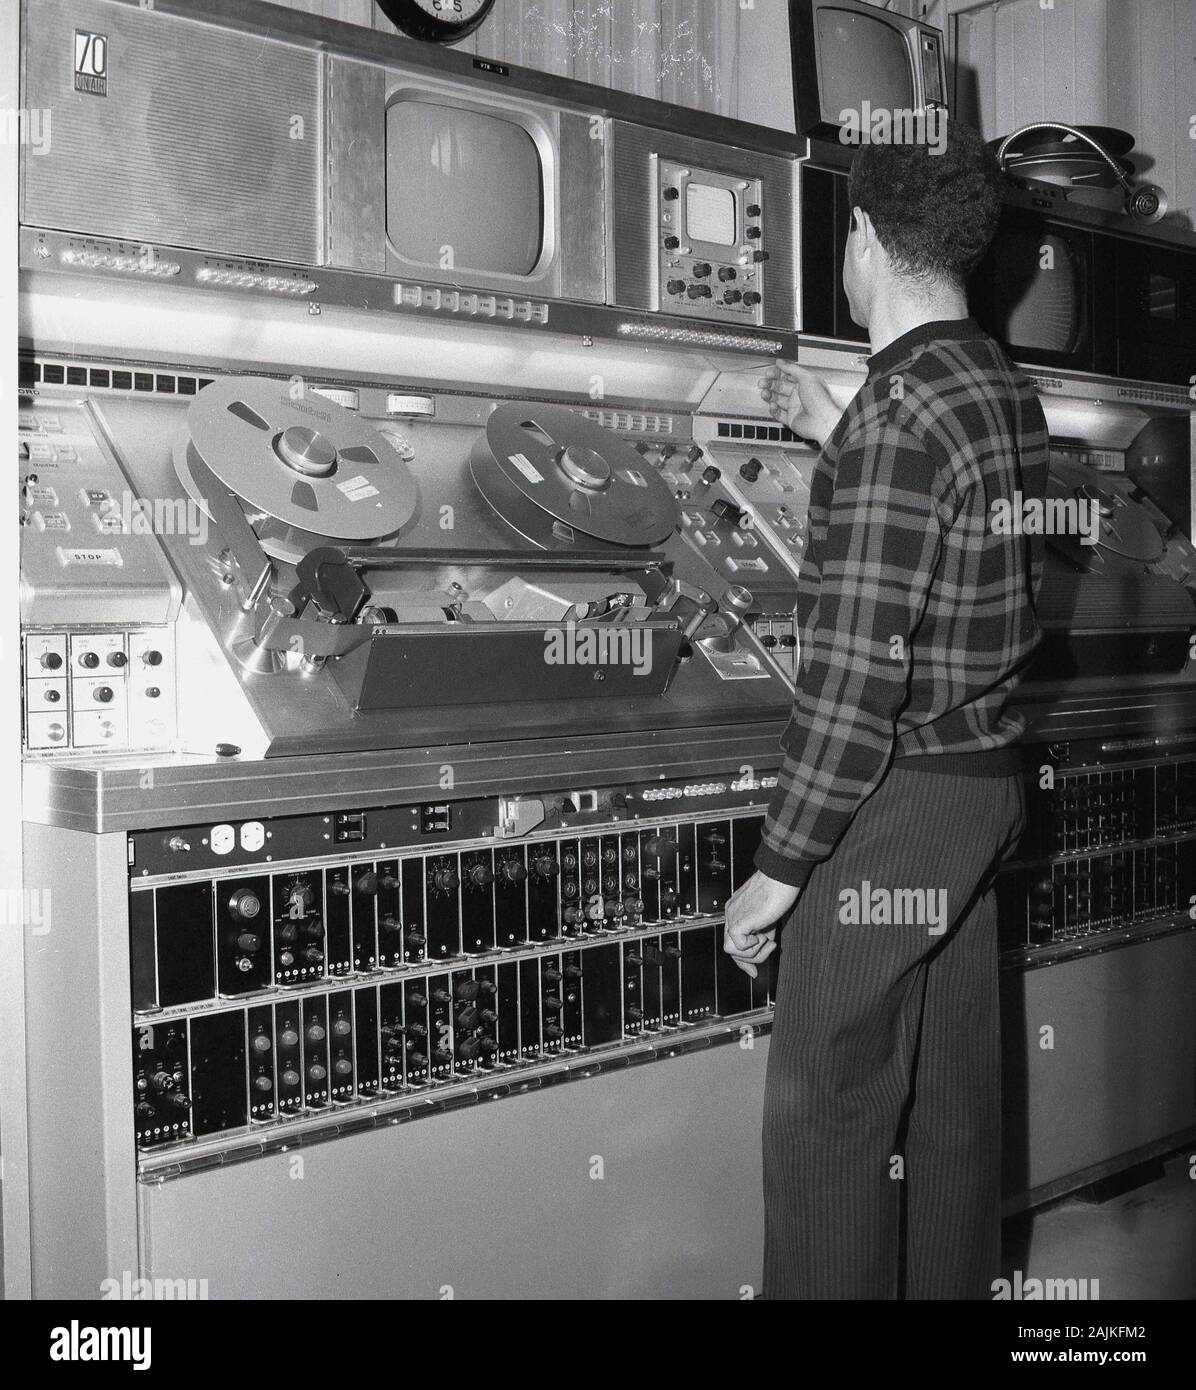 1960er Jahre, historisch, ein männlicher Techniker, der an der Sendeanlage in einer Fernsehraum in Saudi-Arabien arbeitet. In dieser Ära wurden analoge Geräte verwendet, die auf Band mit 2-Zoll-Videorekordern und Playern für die Übertragung und Aufzeichnung basieren. Das 2-Zoll-Videoband wurde Mitte der 50-er Jahre entwickelt und war das erste praktische und kommerziell erfolgreiche Videoformat für analoge Aufnahmen. Stockfoto